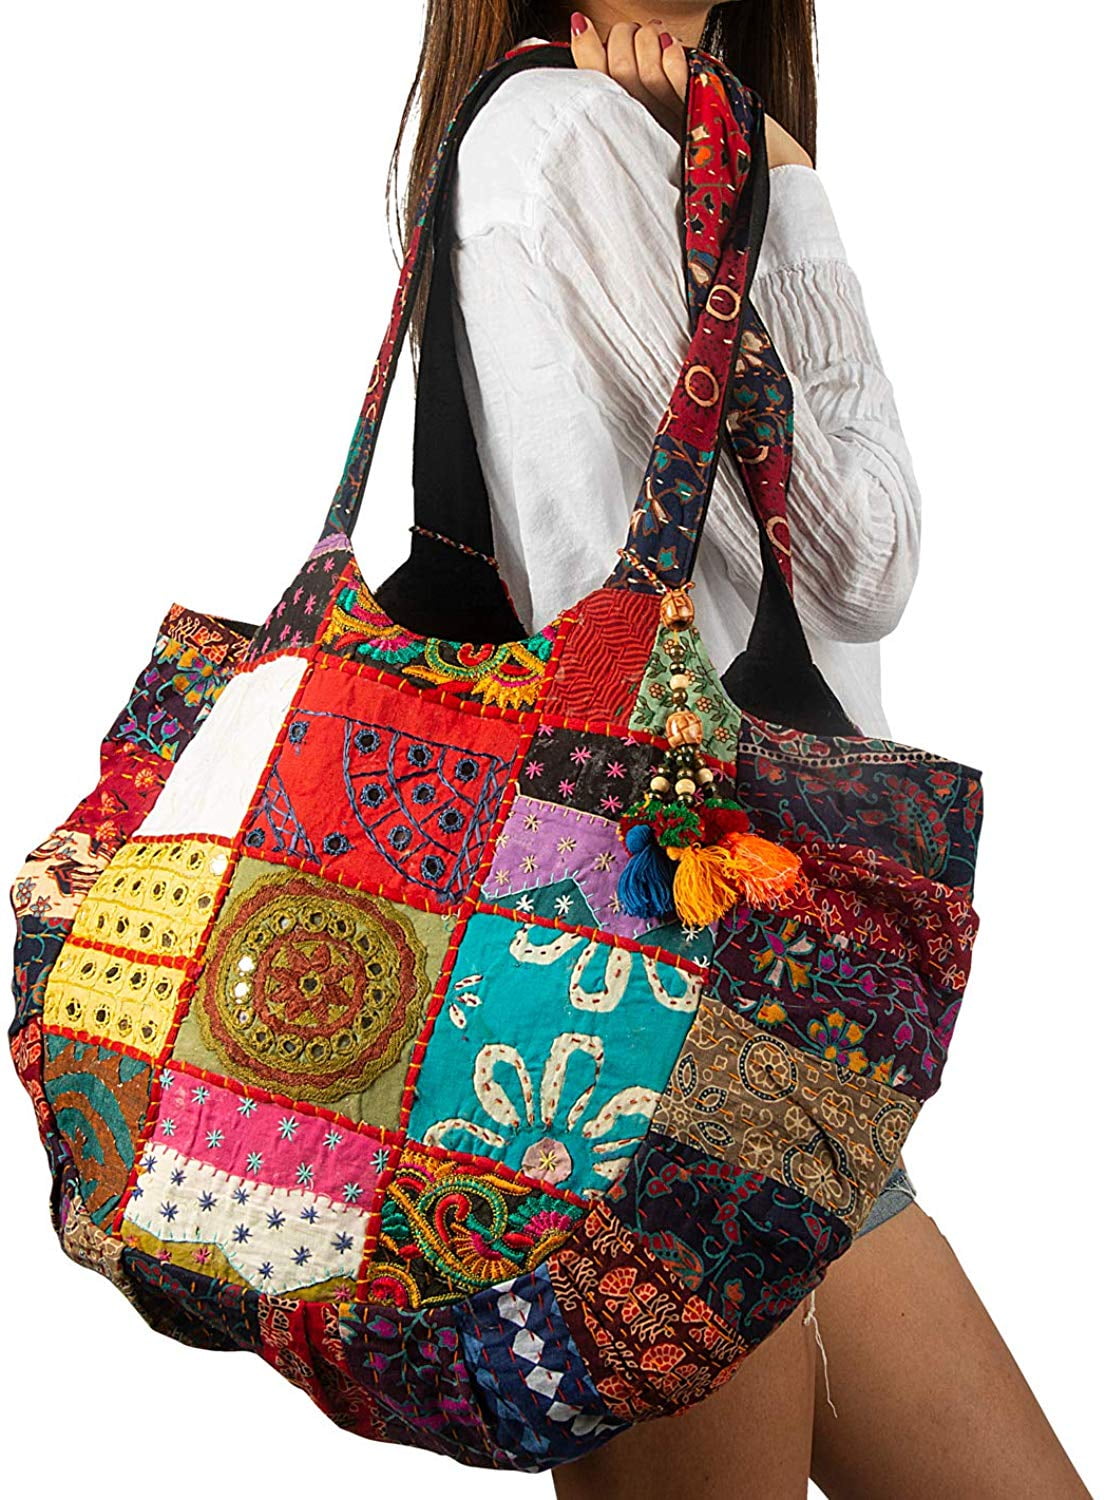 Tribe Azure - Floral Embroidered Boho Tote Shoulder Bag Large Fashion